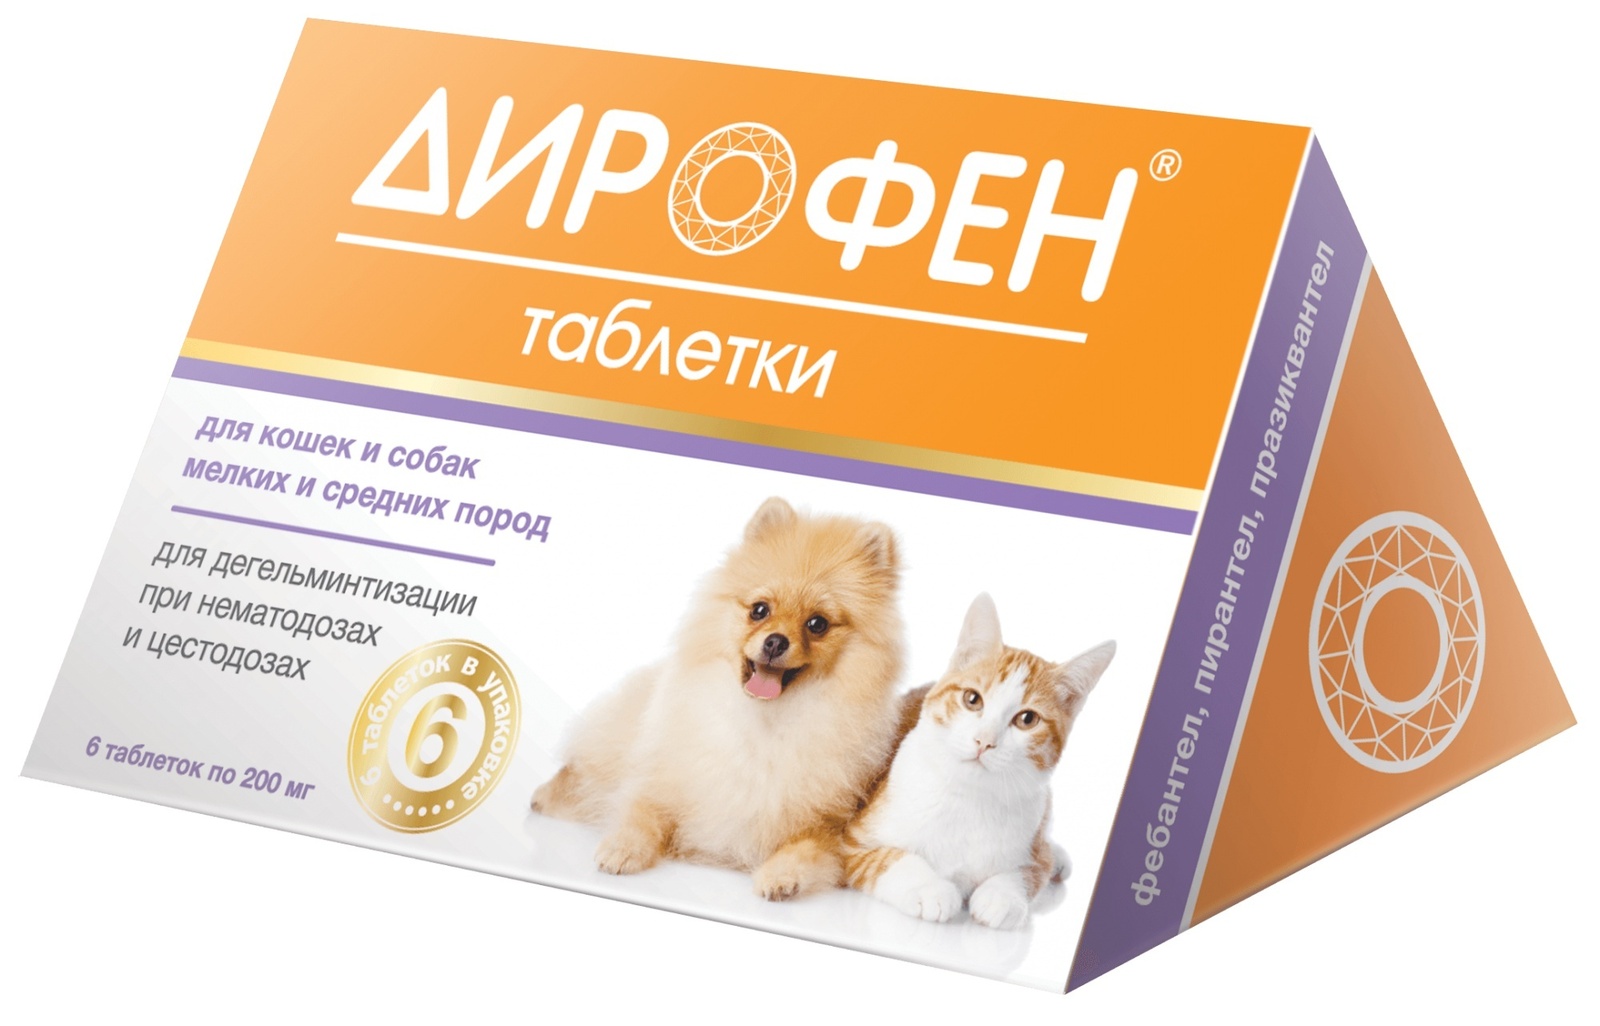 Apicenna Apicenna дирофен плюс таблетки от глистов для кошек и собак (11 г) apicenna дирофен таблетки при нематозах и цестозах у собак крупных пород 6 таблеток